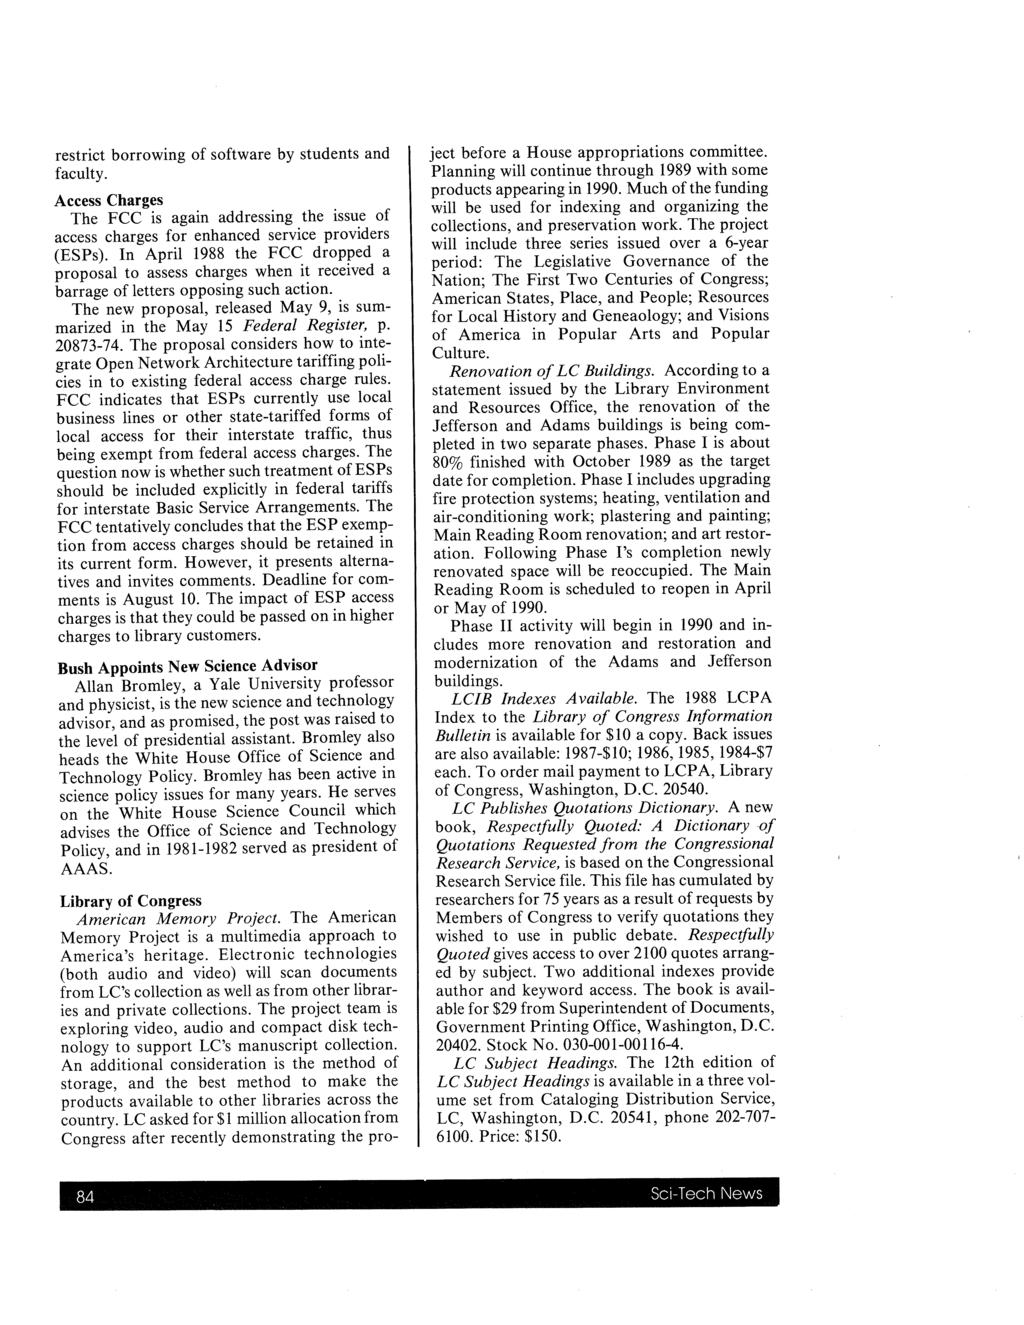 Sci-Tech News, Vol. 43 [1989], Iss. 3, Art.